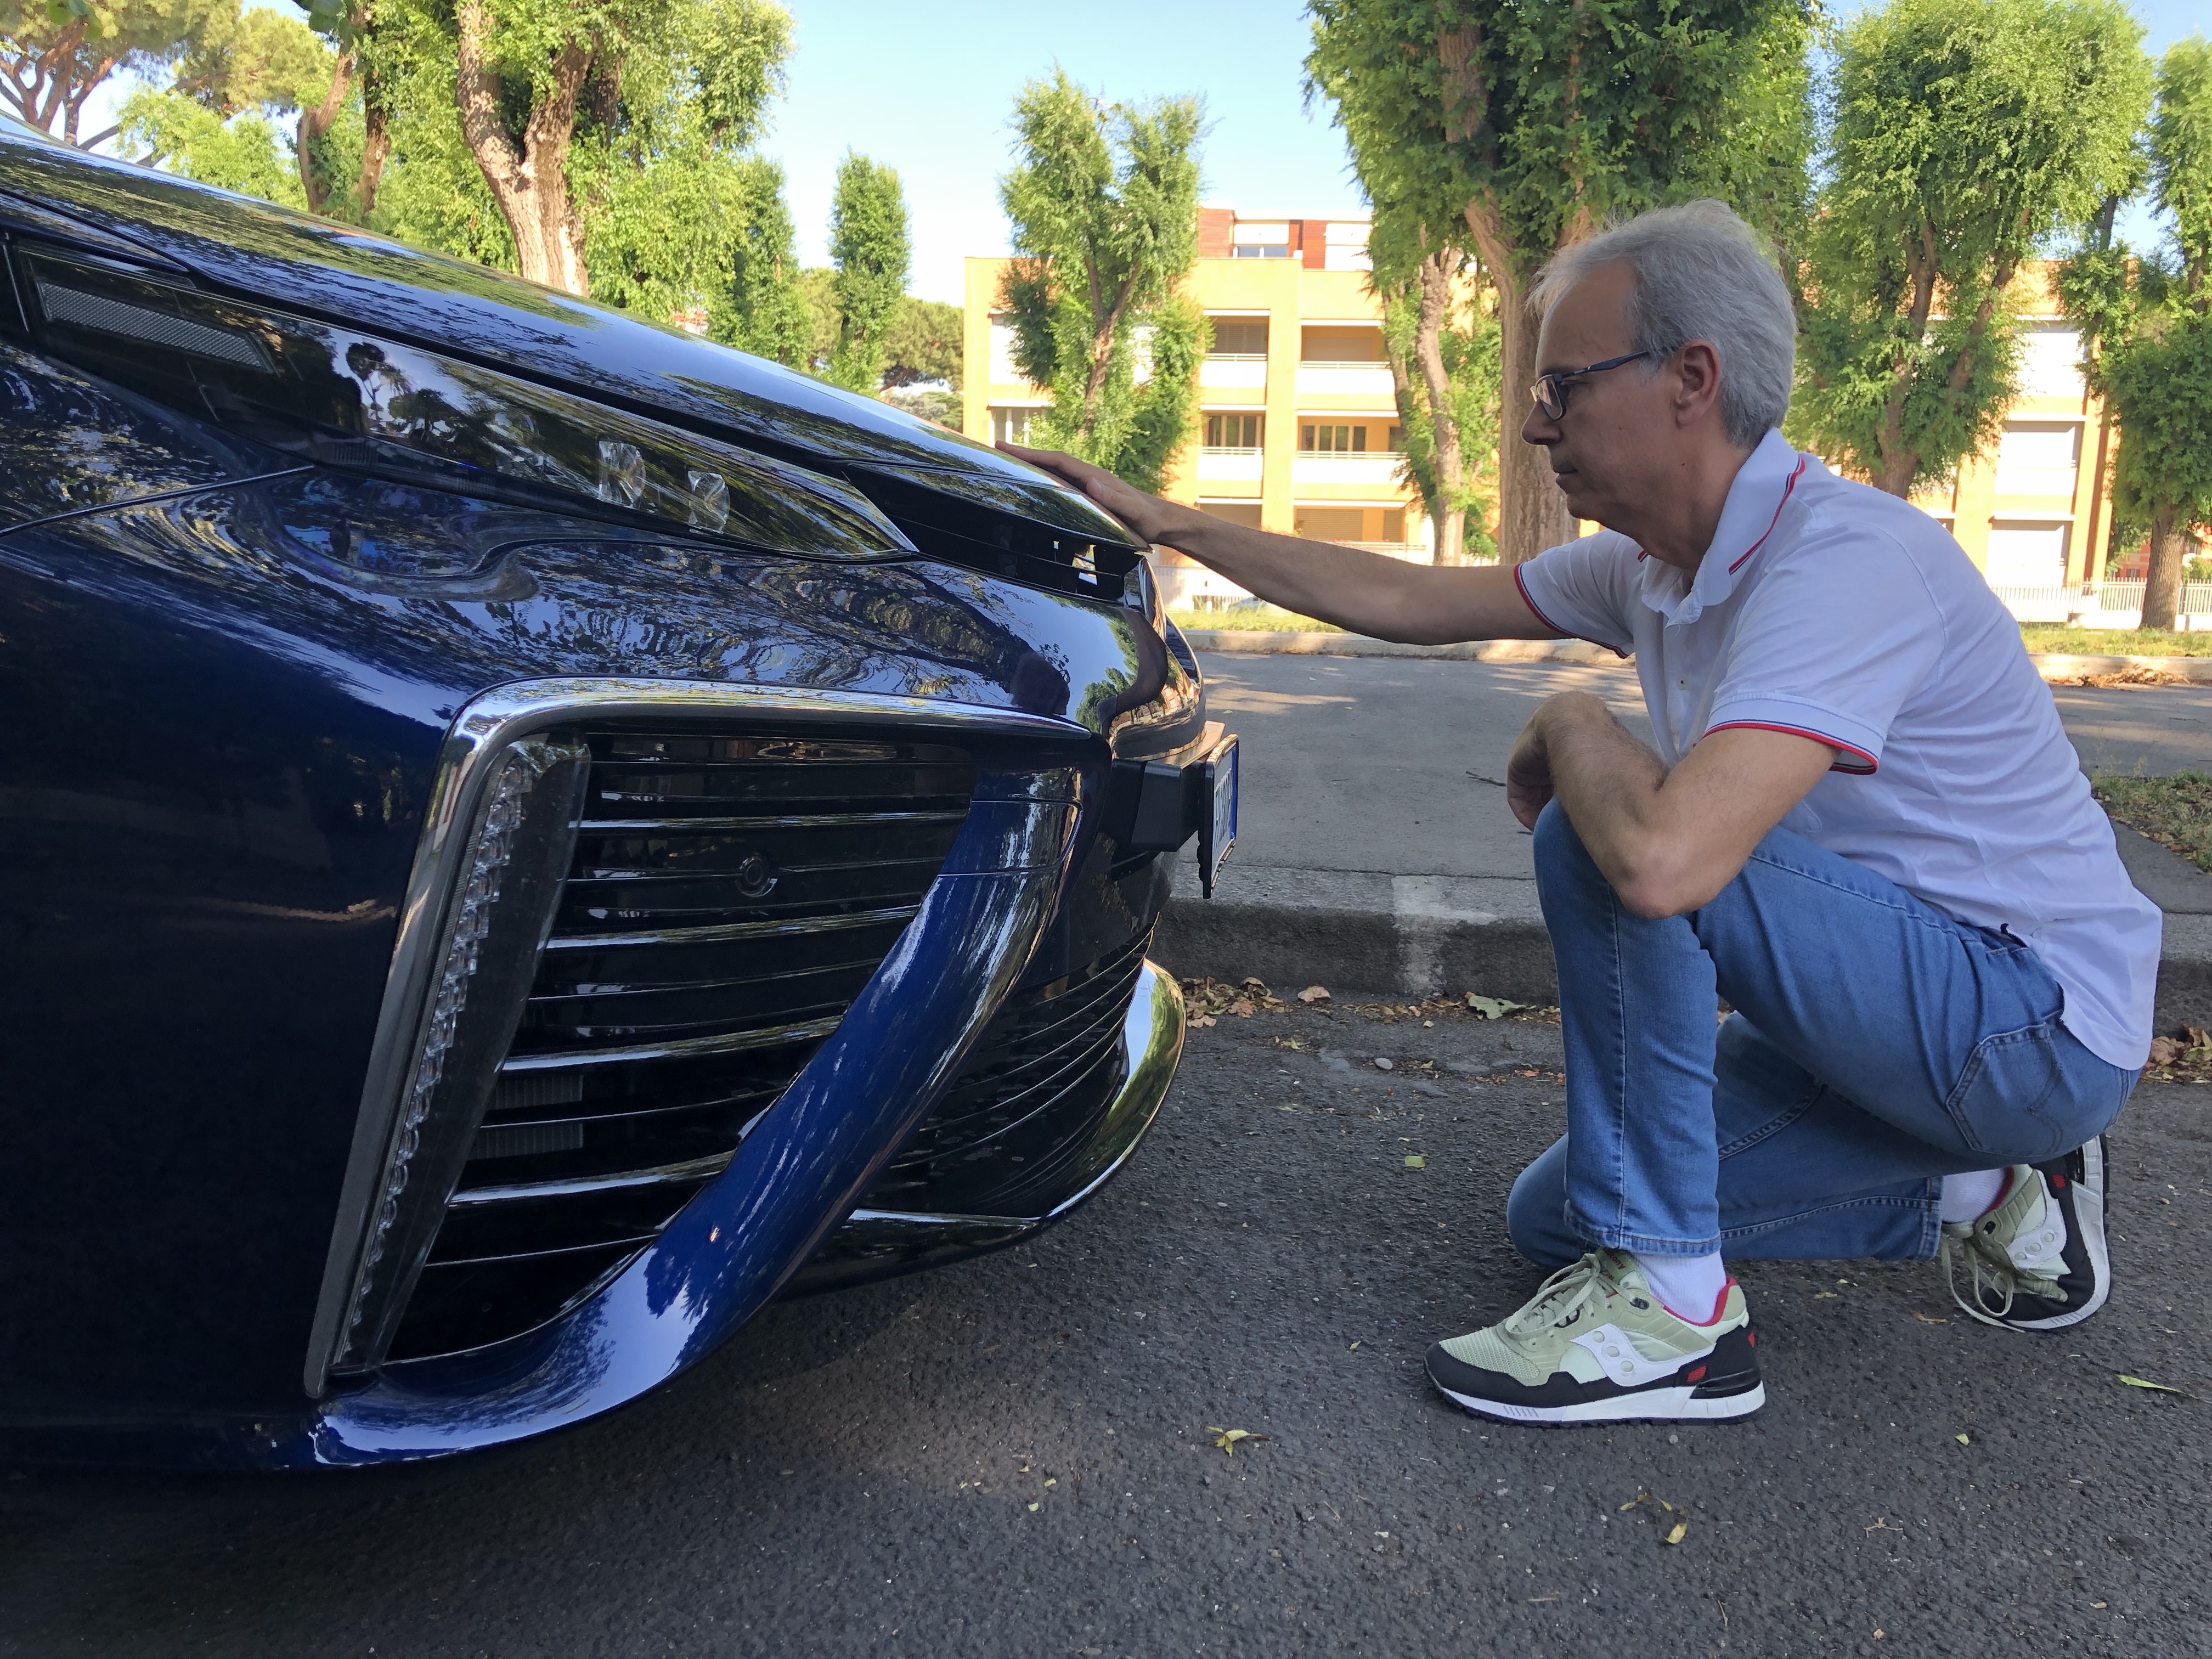 Toyota Mirai a idrogeno, un’auto del futuro – La mia prova faccia a faccia